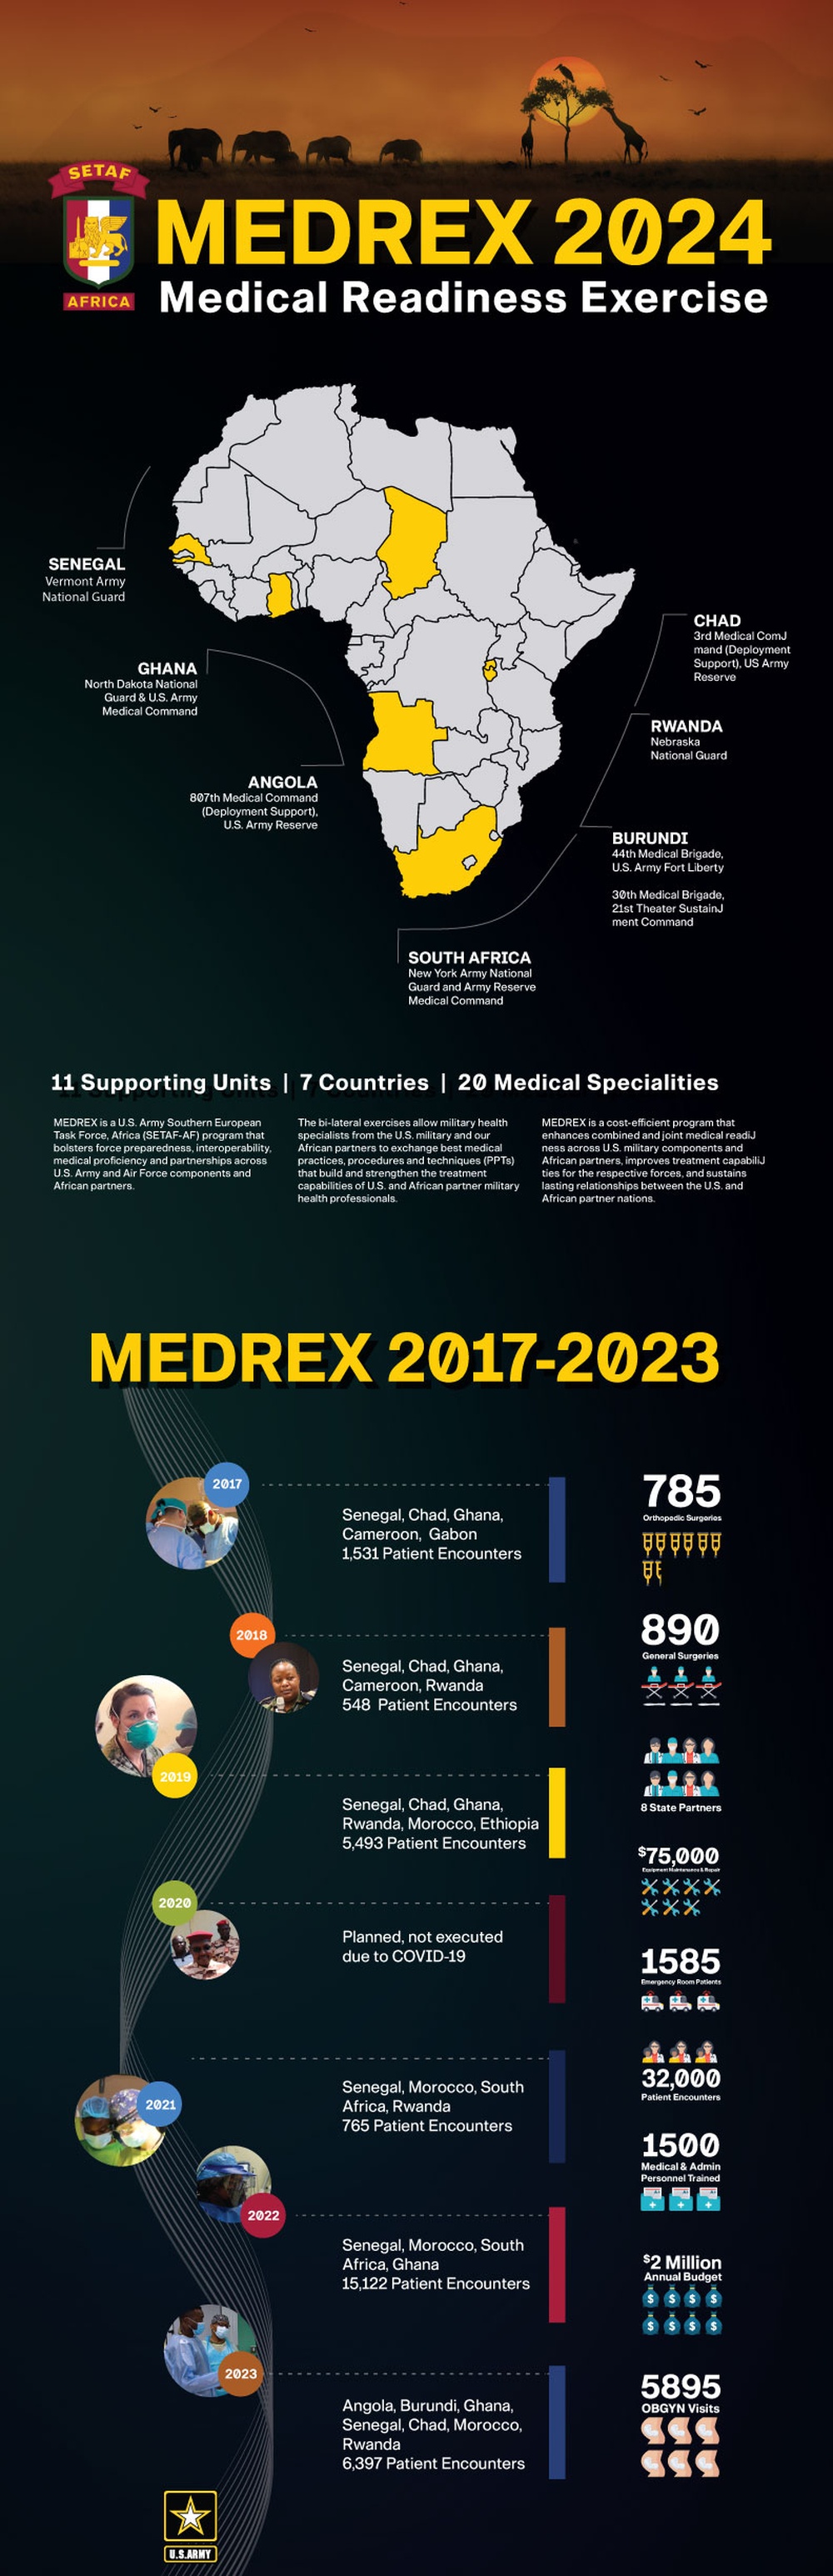 SETAF-AF Medical Readiness Exercise Program (MEDREX) 2024 Infographic